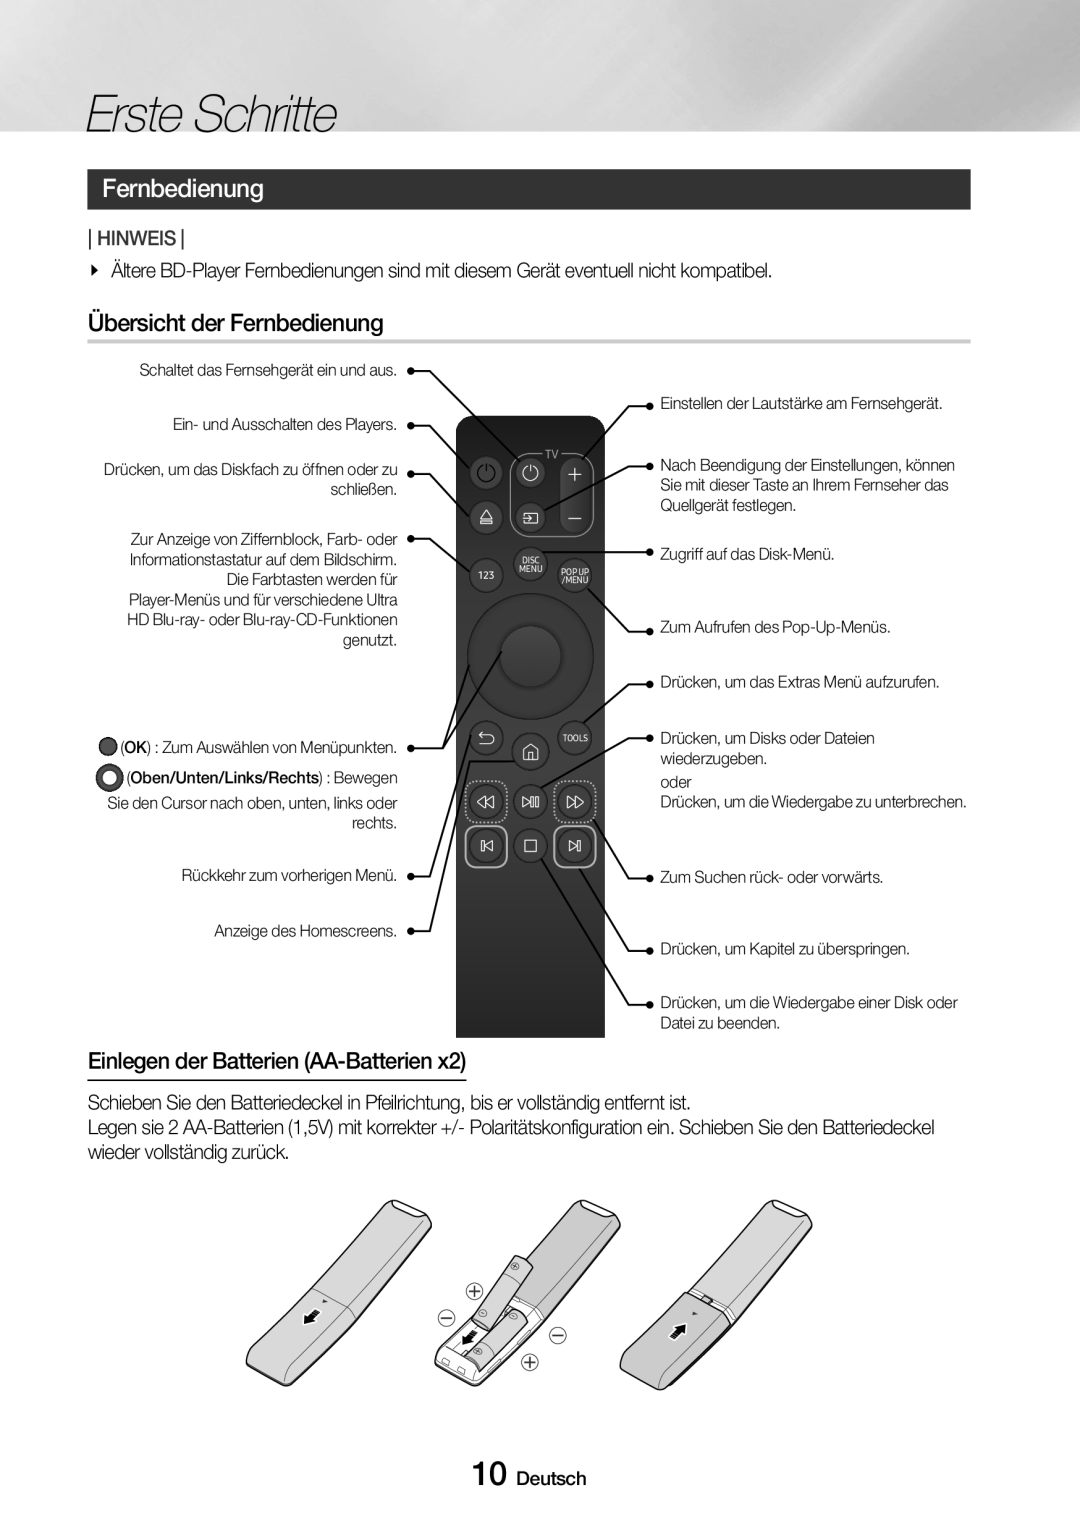 Samsung UBD-M8500/EN, UBD-M8500/ZG manual Übersicht der Fernbedienung, Einlegen der Batterien AA-Batterien 